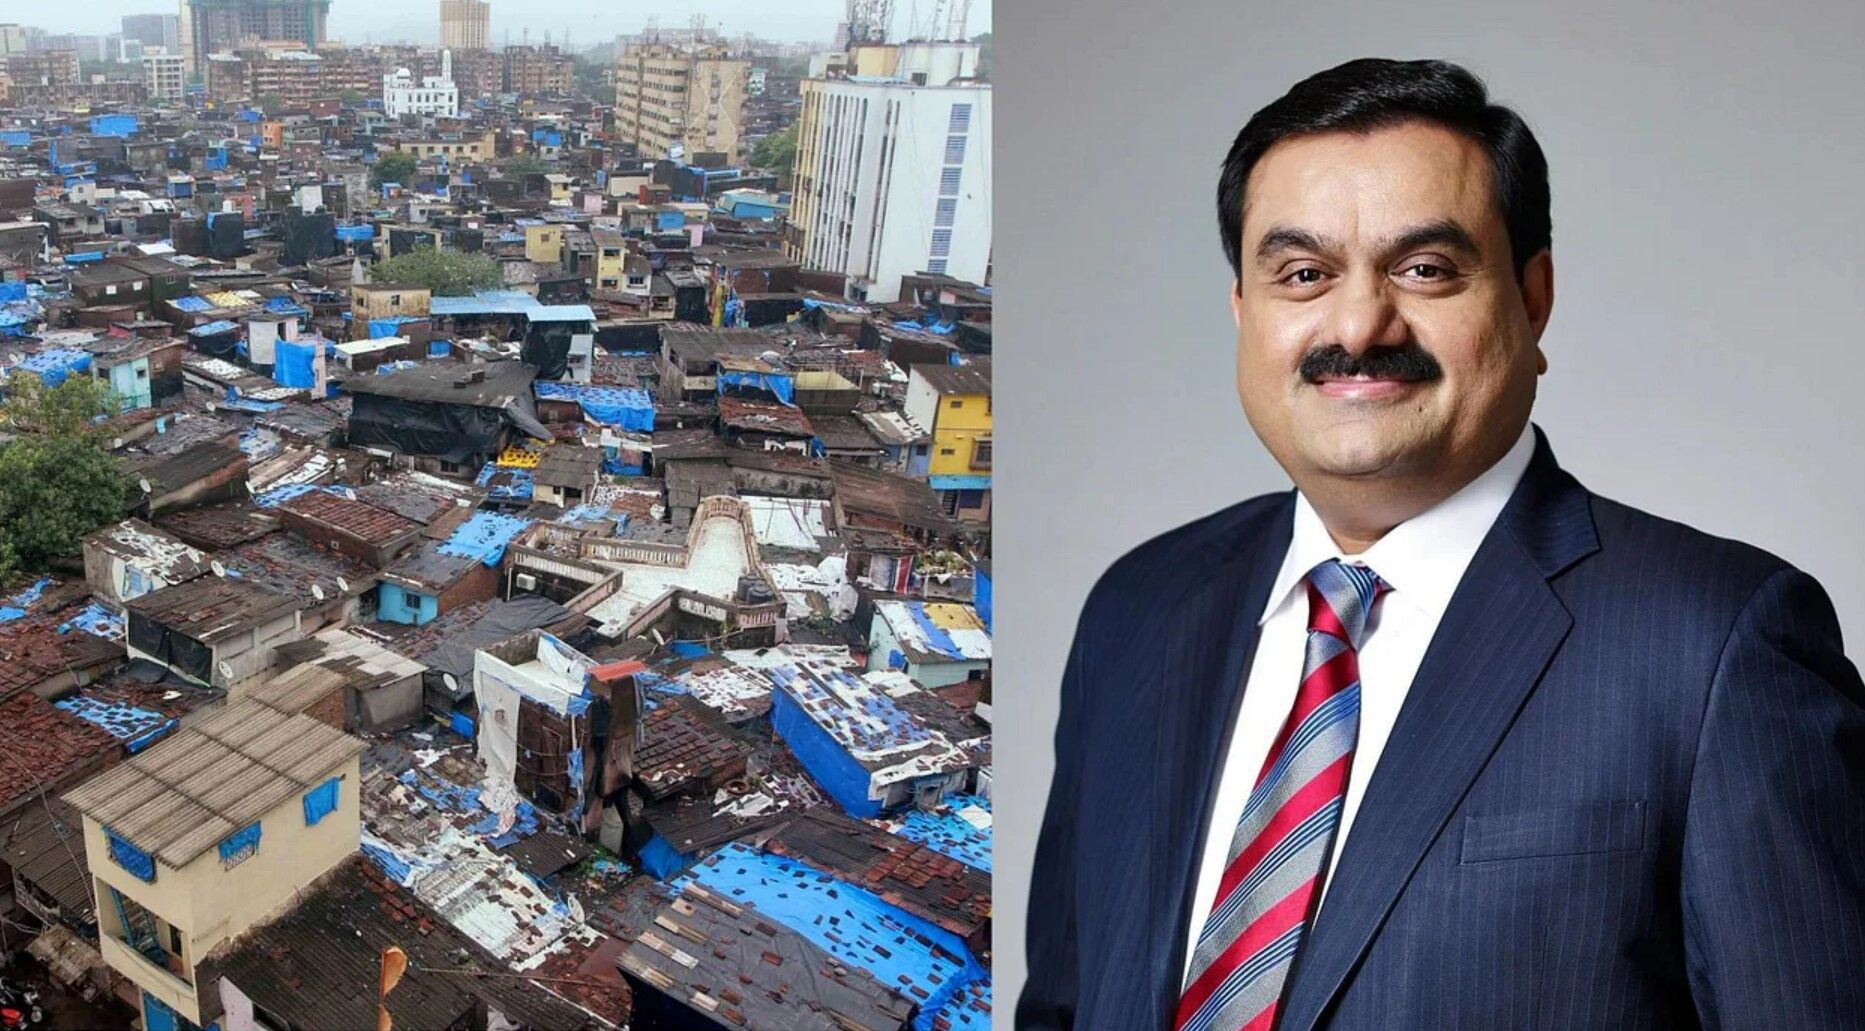 Dharavi Project: Asia की सबसे बड़ी झुग्गी बस्ती धारावी प्रोजेक्ट पर अडानी ग्रुप का कब्जा, 5,069 करोड़ की लगाई थी बोली